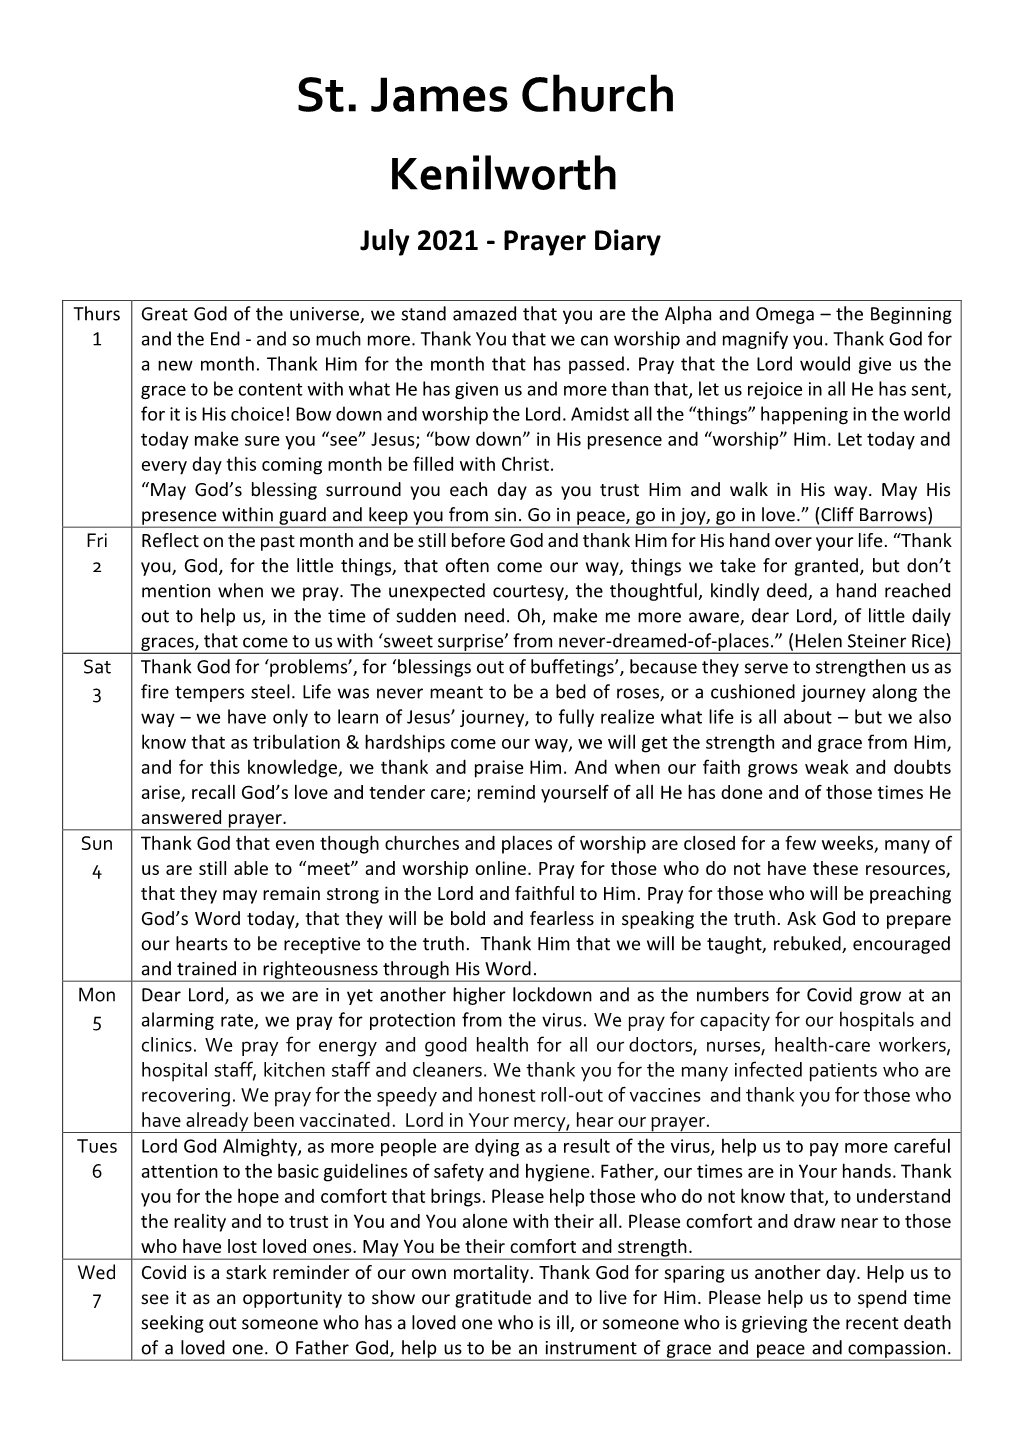 Prayer Diary